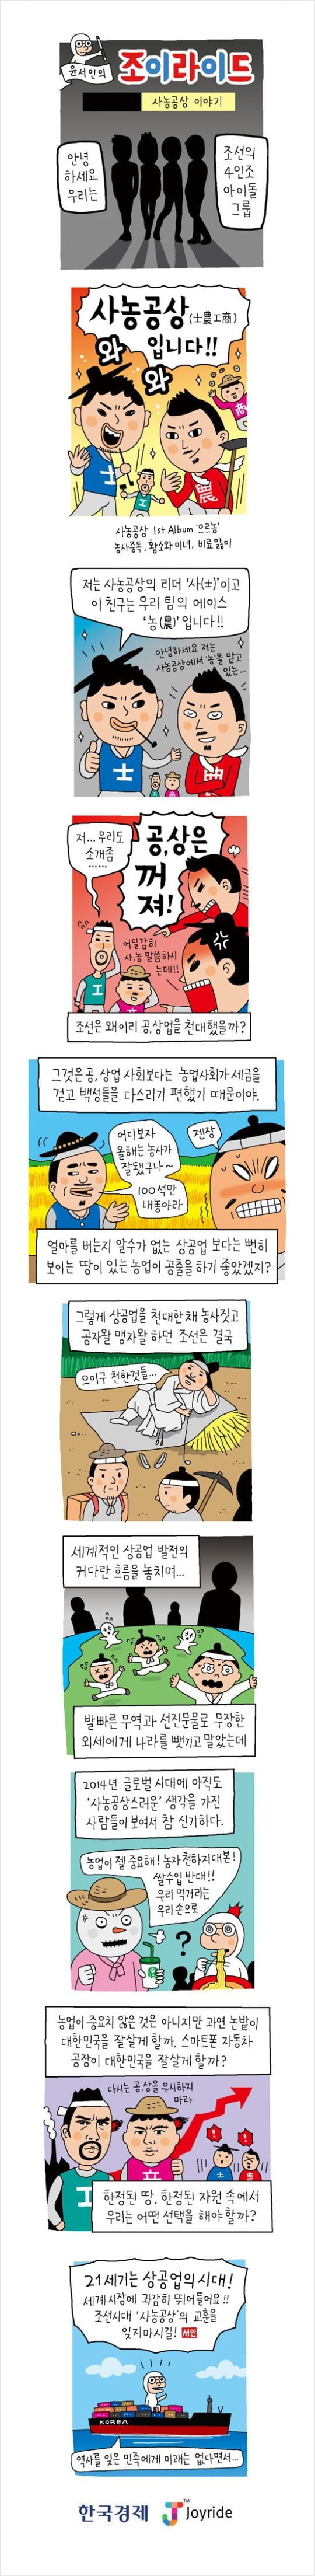 [윤서인의 웹툰'조이라이드'] (1) 사농공상 이야기